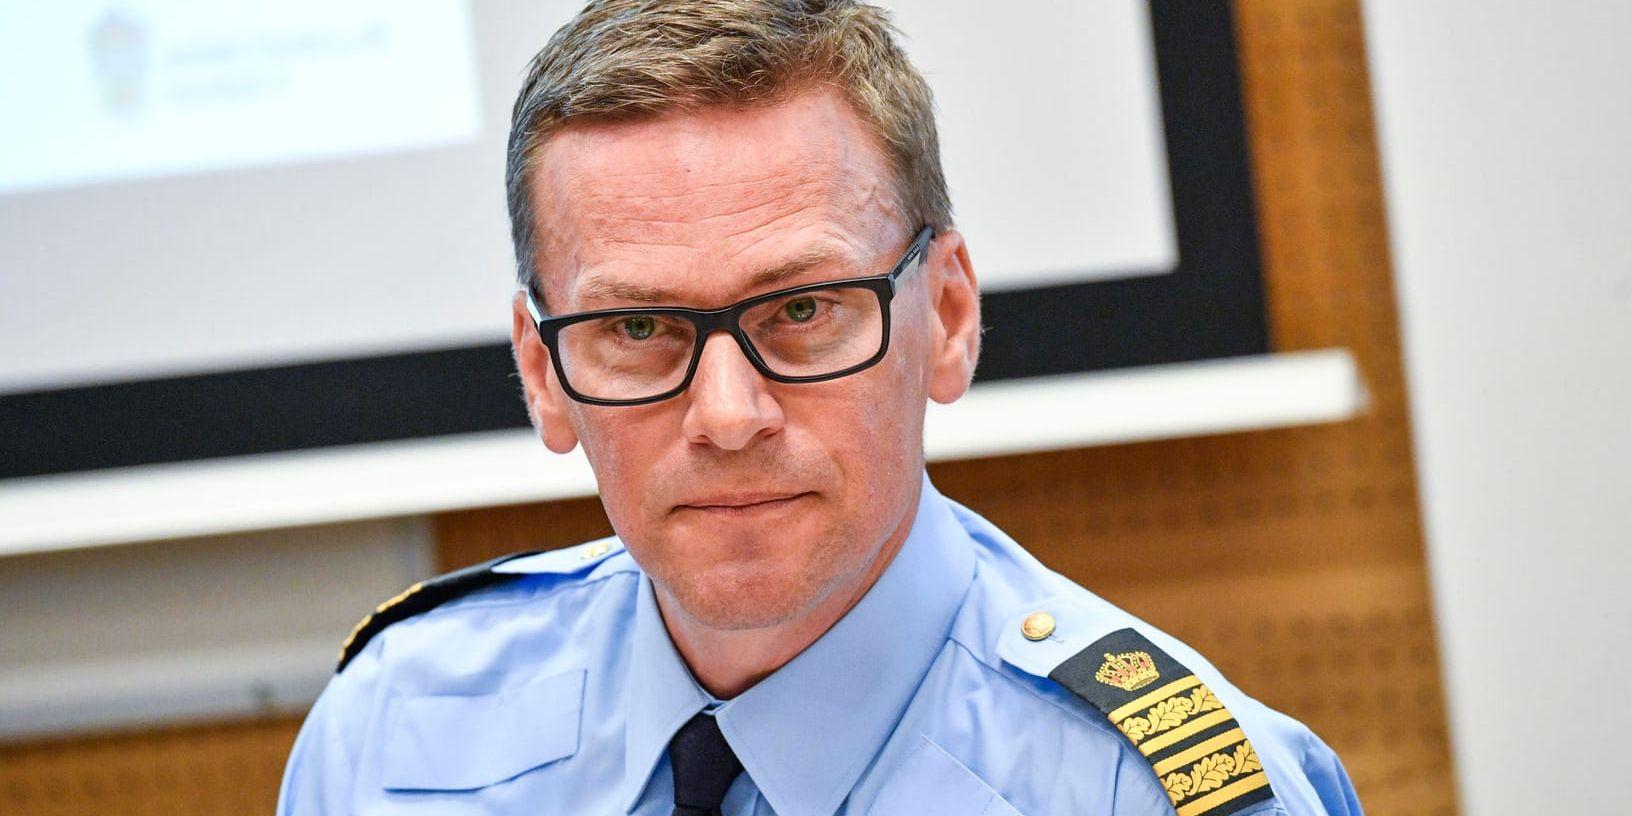 Genom arbetet mot grov organiserad brottslighet i södra Sverige kunde förra året drygt 94 miljoner kronor återföras till staten, berättar Mats Berggren, underrättelsechef vid polisen region Syd.